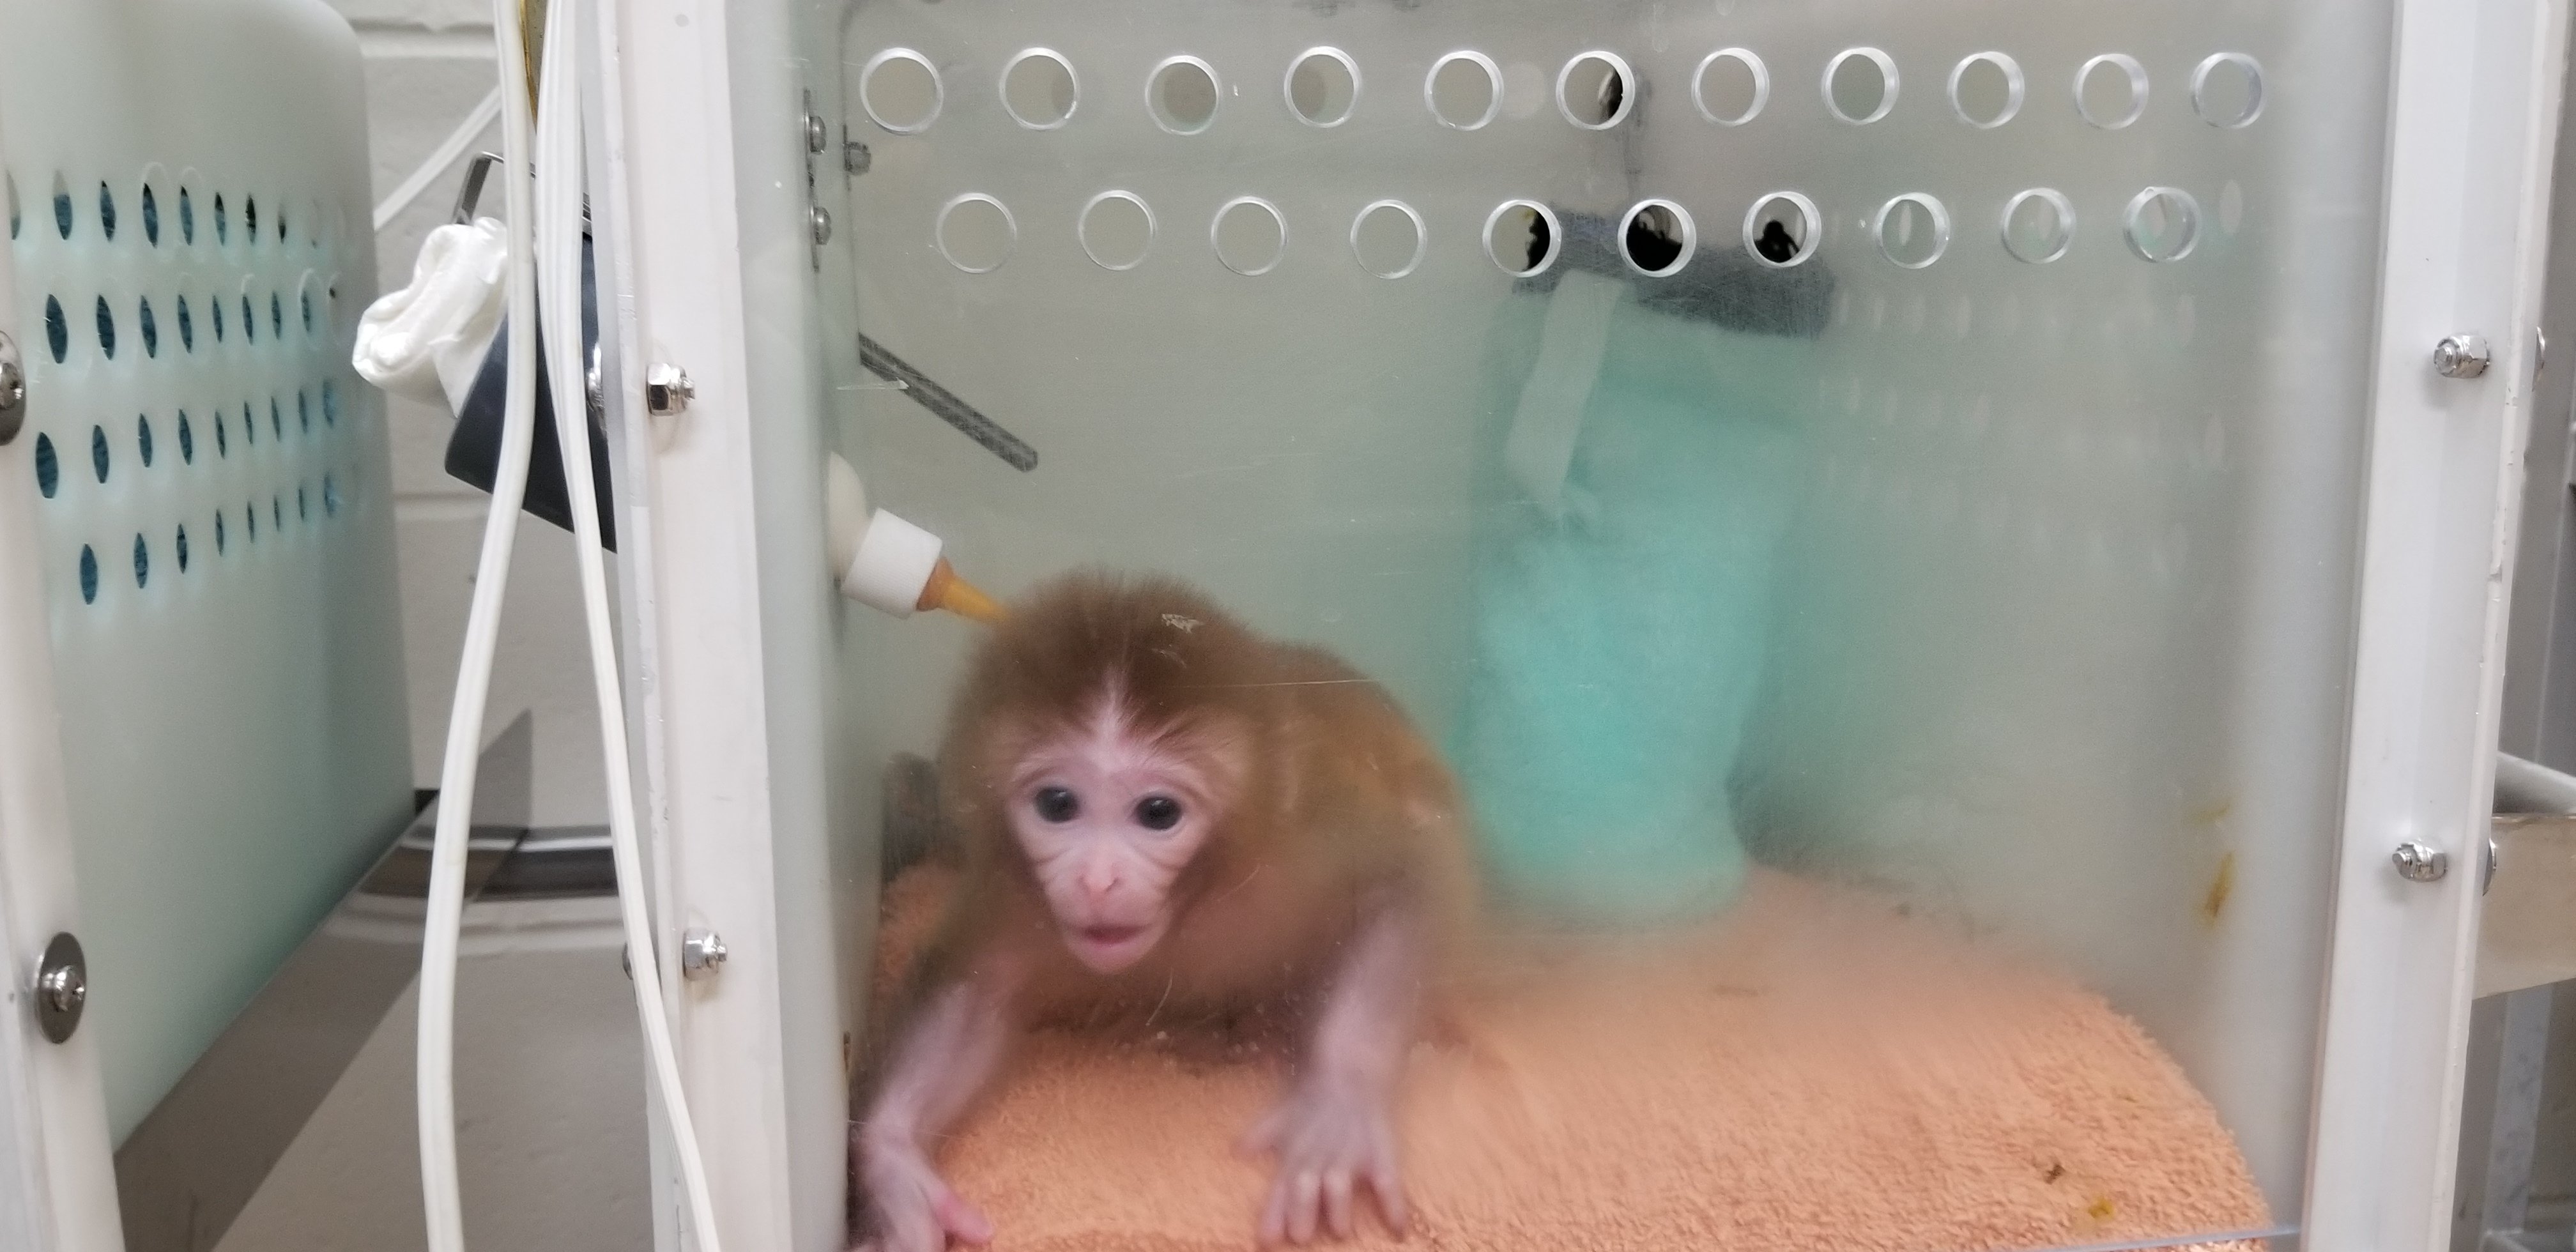 An infant monkey